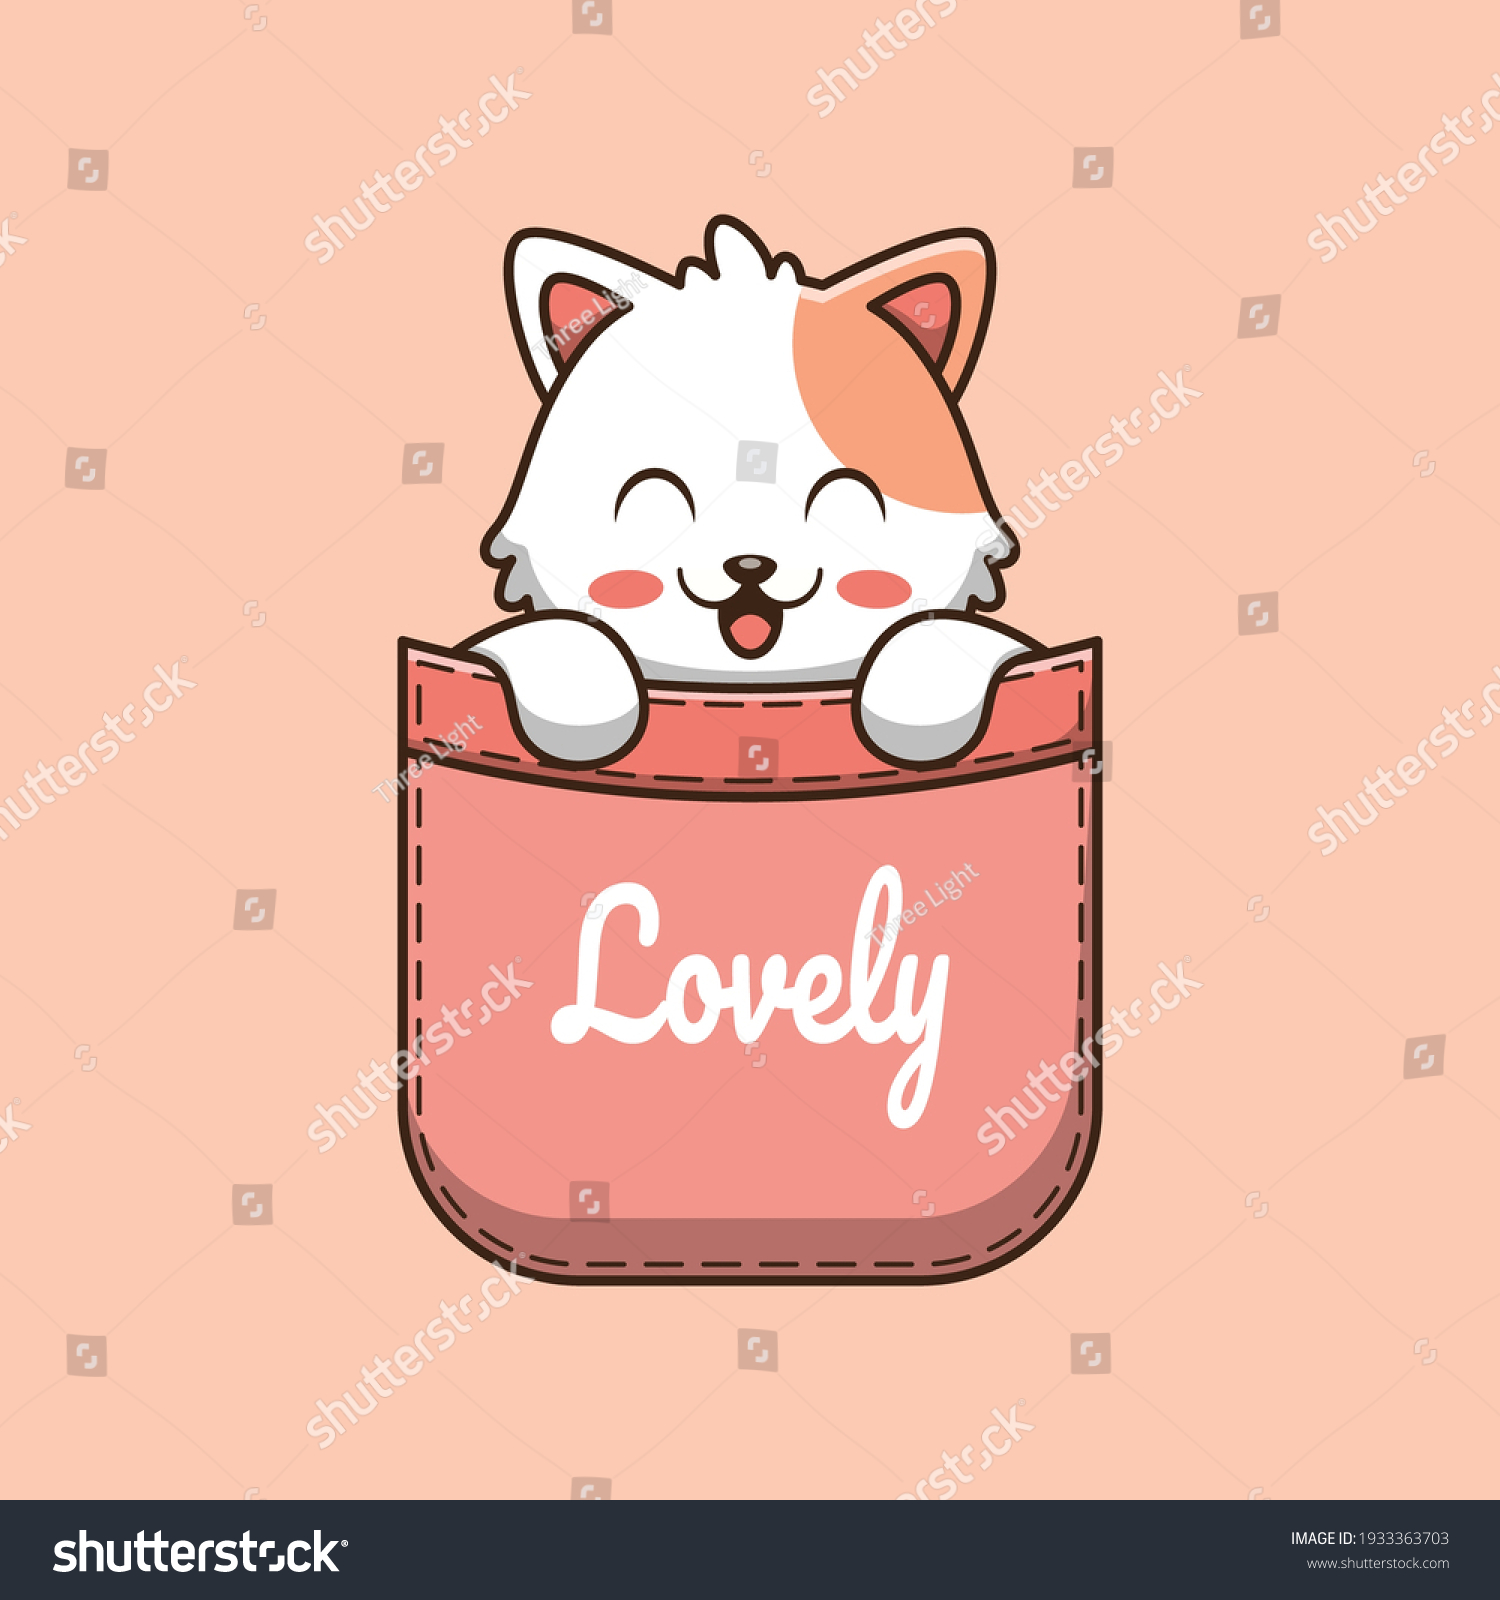 SVG of cute cat in pocket cartoon illustration svg